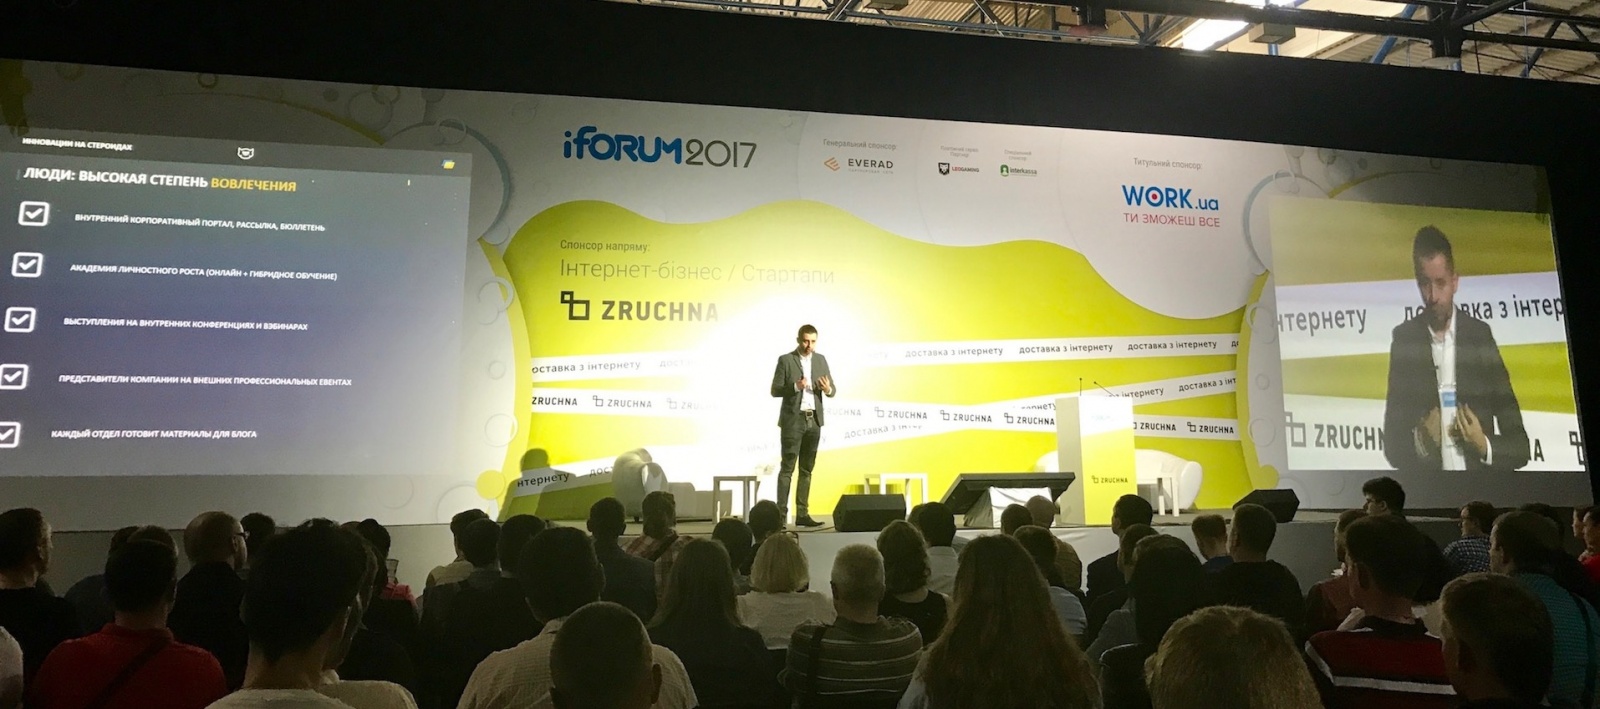 Большое ИТ-коммьюнити на конференции iForum 2017 (Киев) - 7